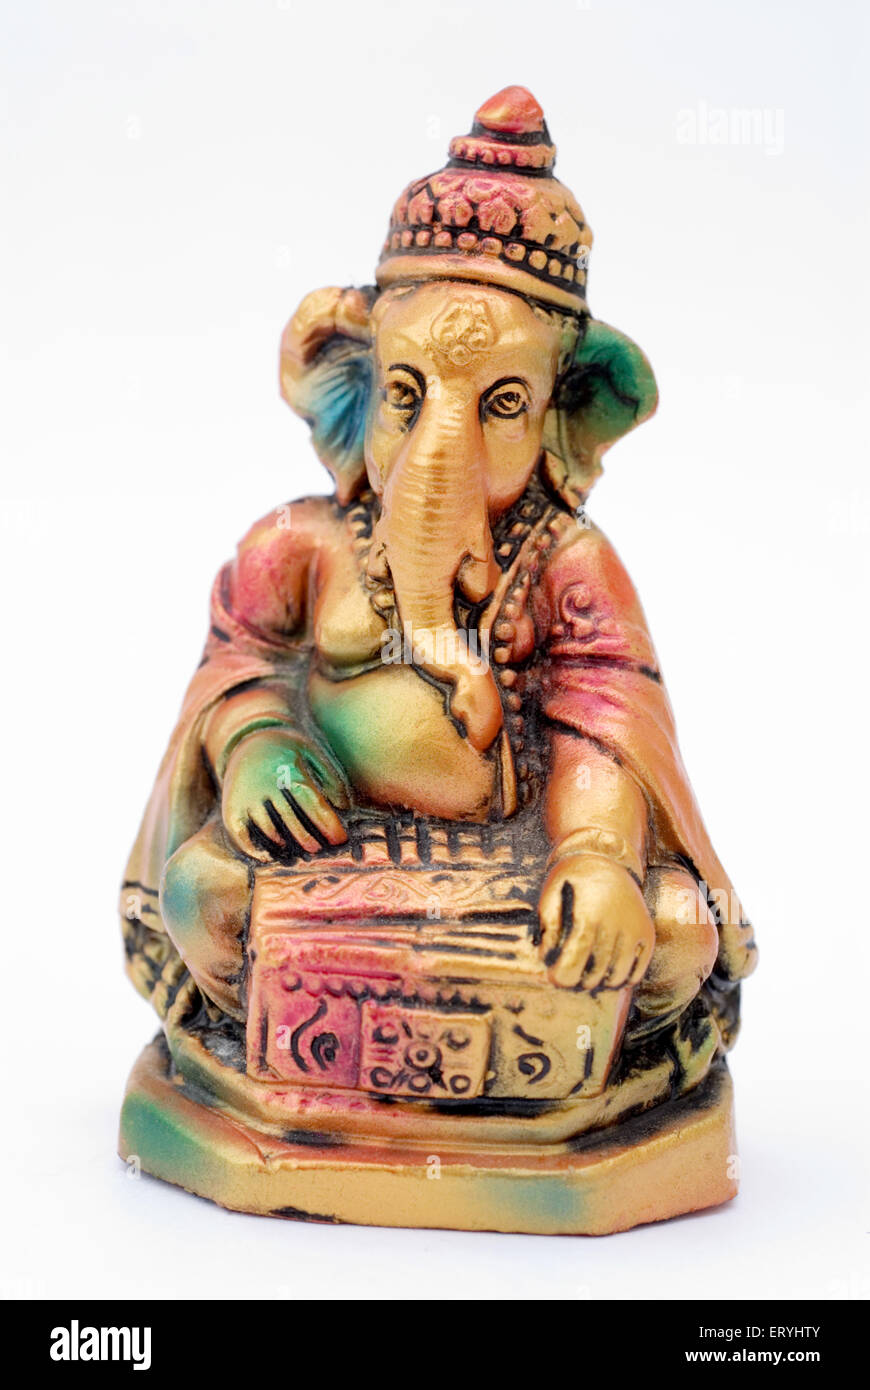 Colourful statue of lord Ganesha elephant headed god playing harmonium ; India Stock Photo